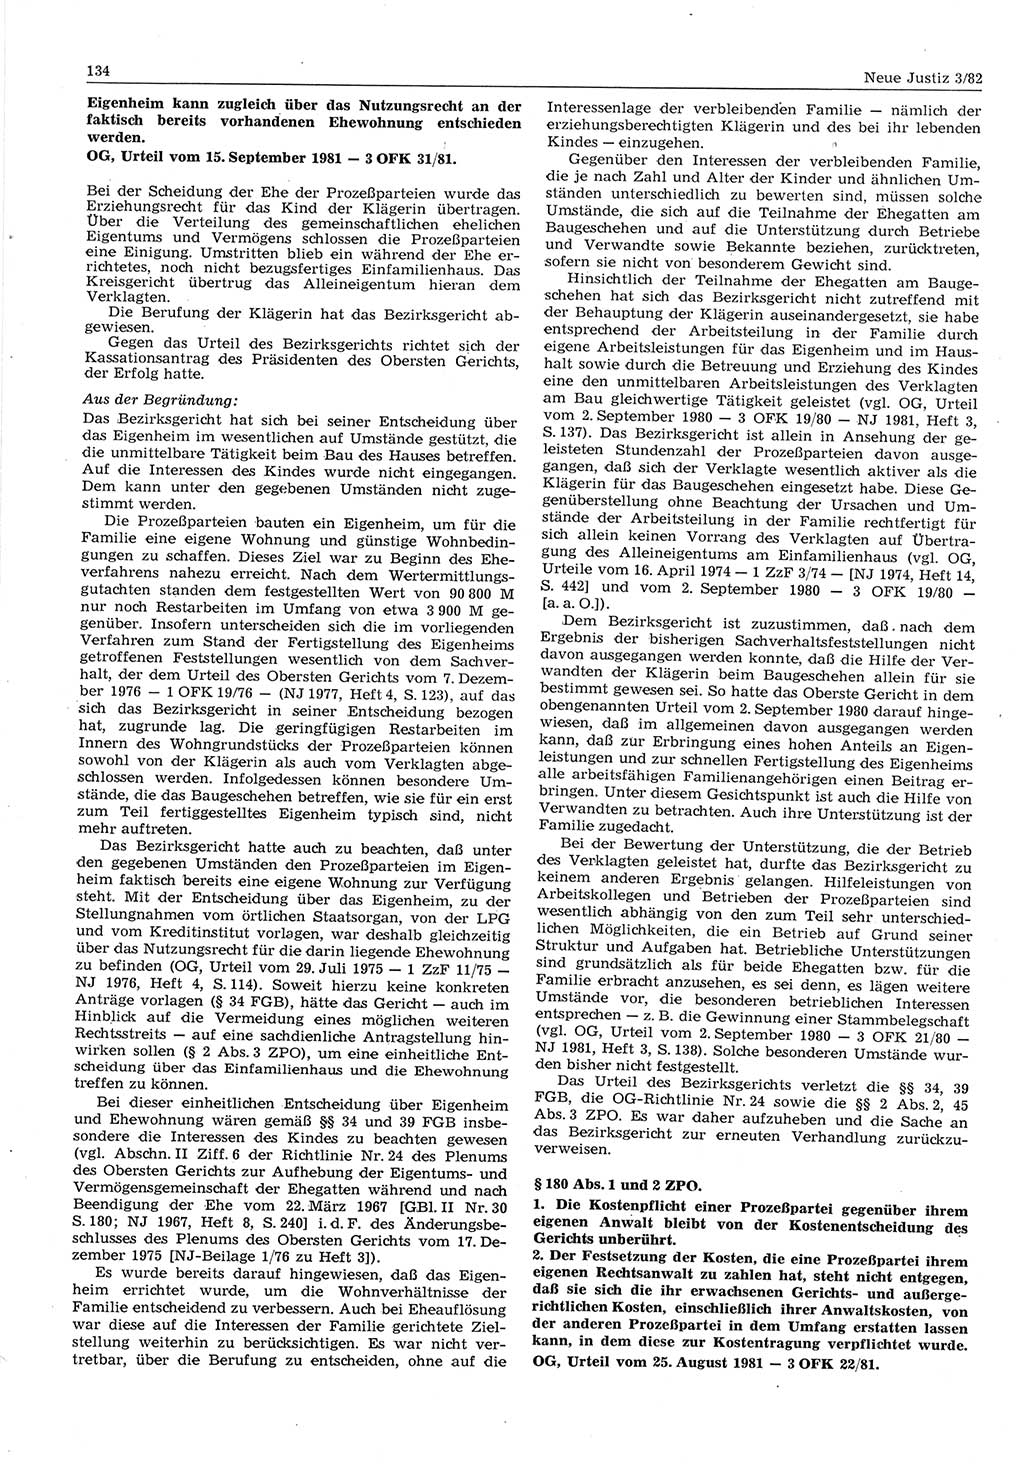 Neue Justiz (NJ), Zeitschrift für sozialistisches Recht und Gesetzlichkeit [Deutsche Demokratische Republik (DDR)], 36. Jahrgang 1982, Seite 134 (NJ DDR 1982, S. 134)